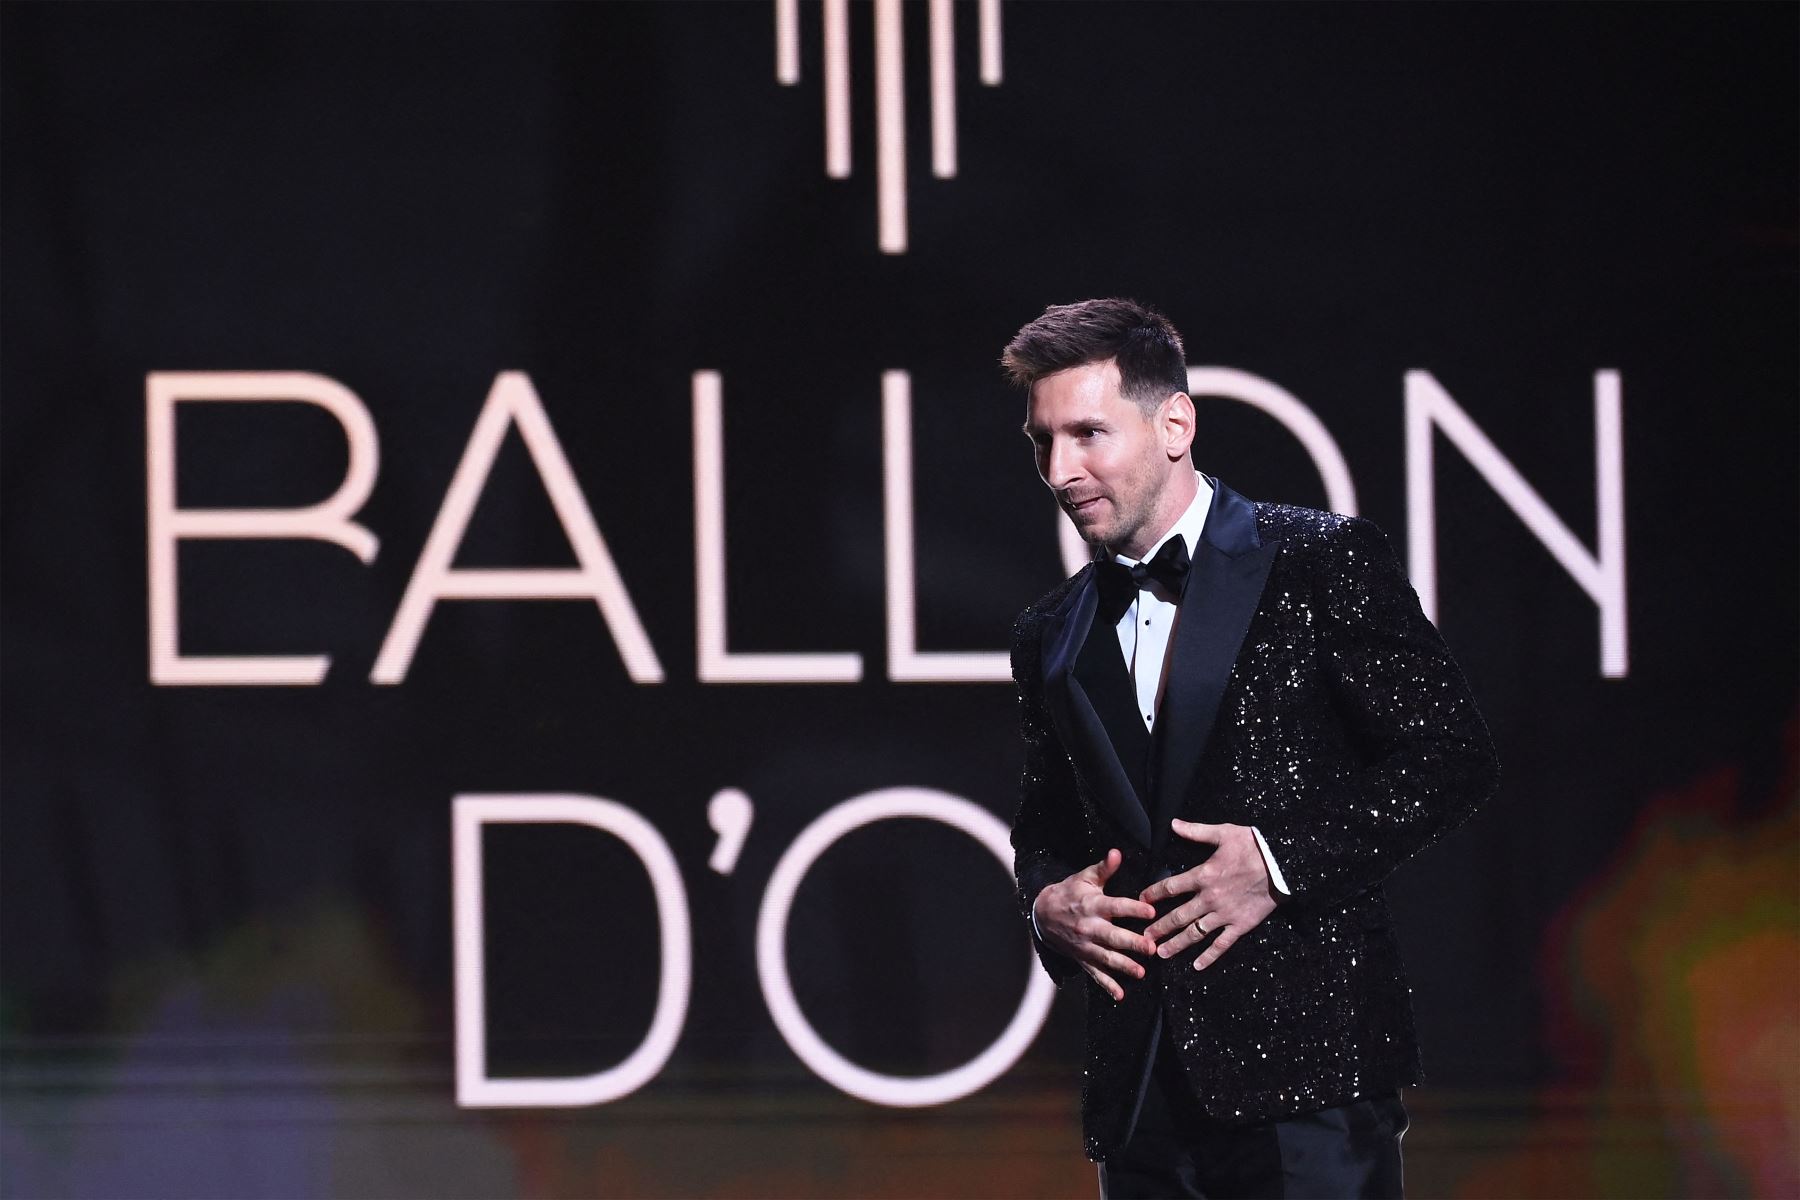 El delantero argentino del Paris Saint-Germain, Lionel Messi, llega para pronunciar un discurso después de recibir el Balón de Oro durante la ceremonia de entrega del Balón de Oro de Francia 2021.
Foto: AFP